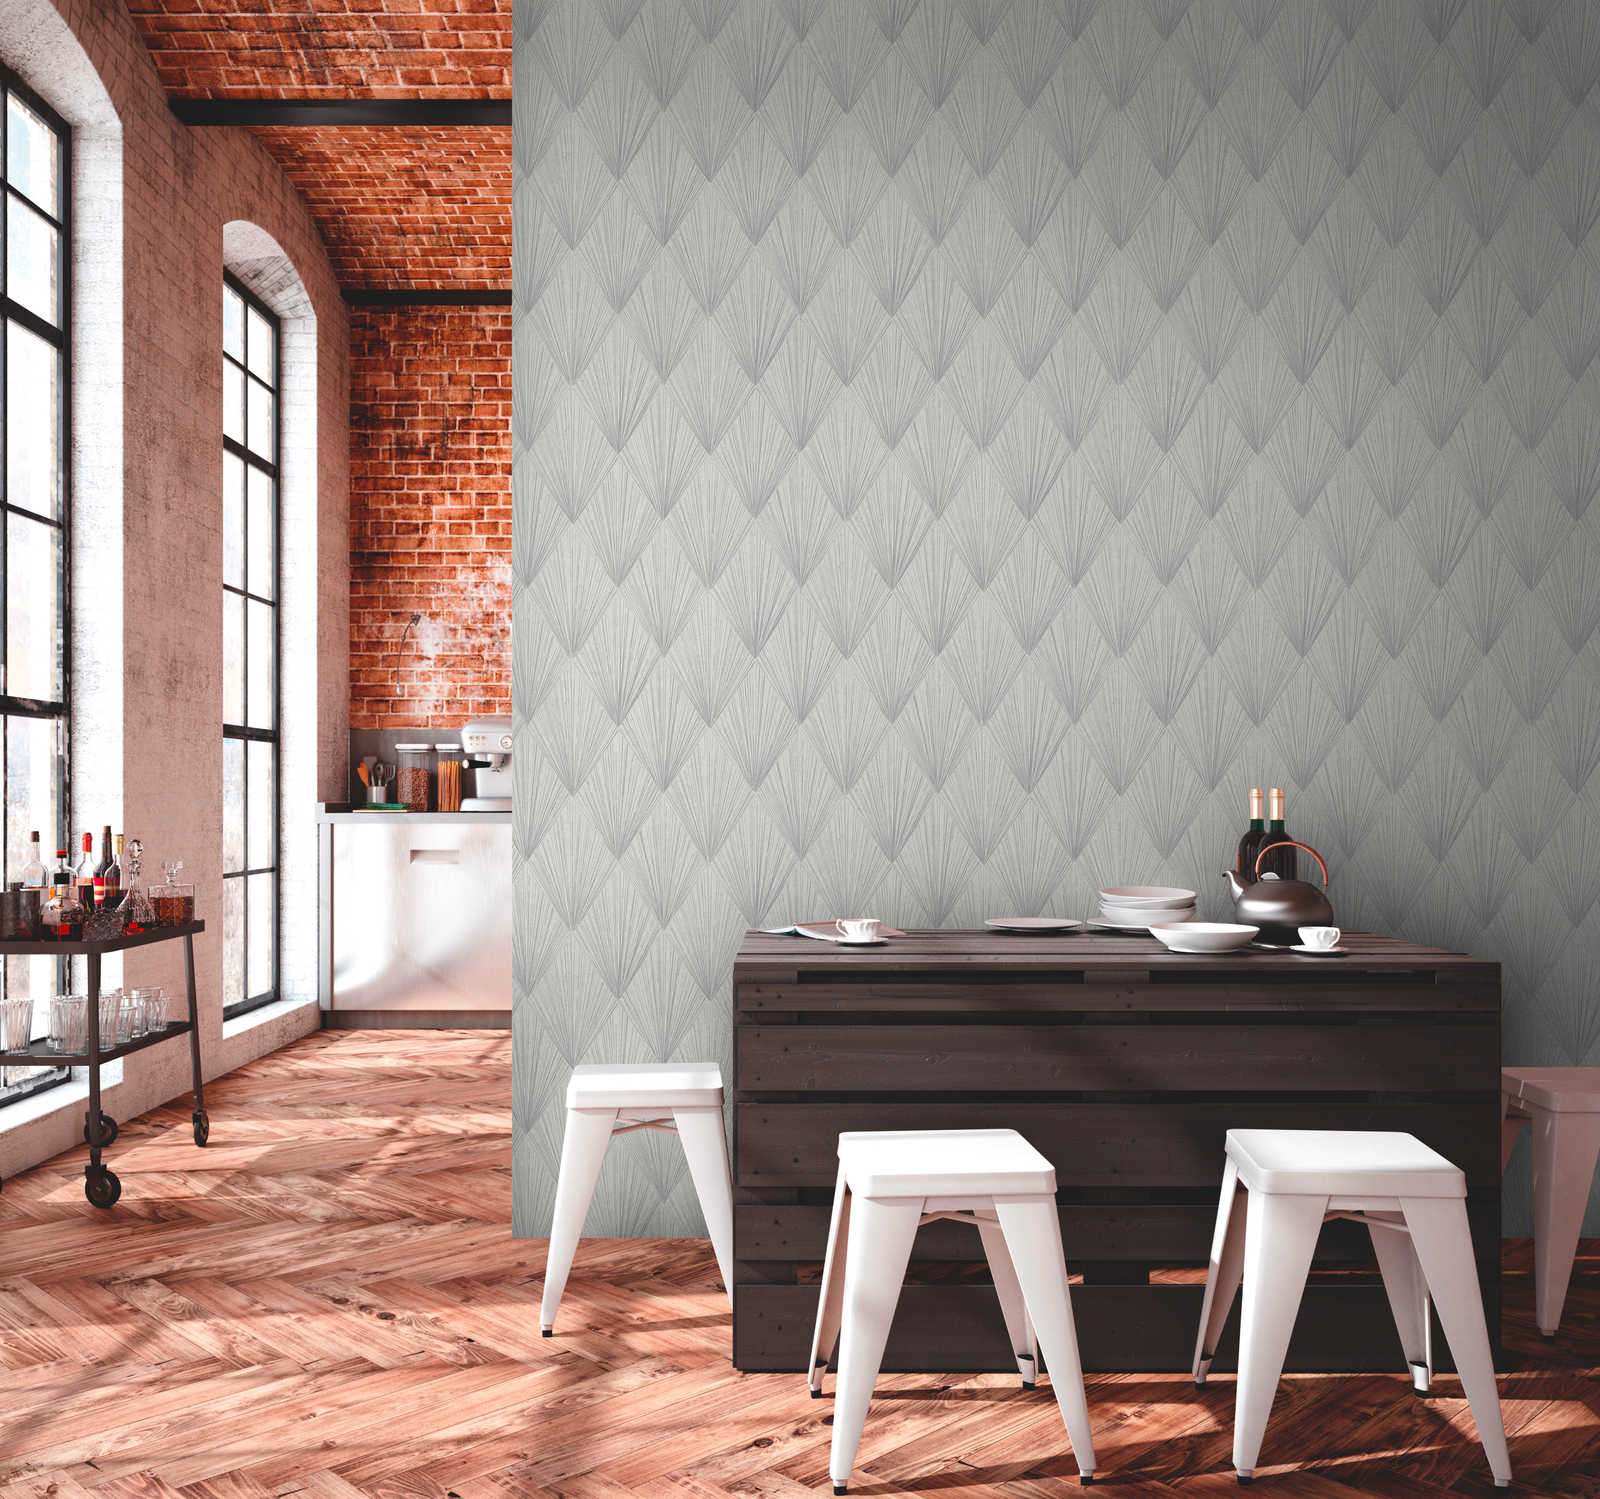             Pattern wallpaper modern art deco style - grey, metallic, white
        